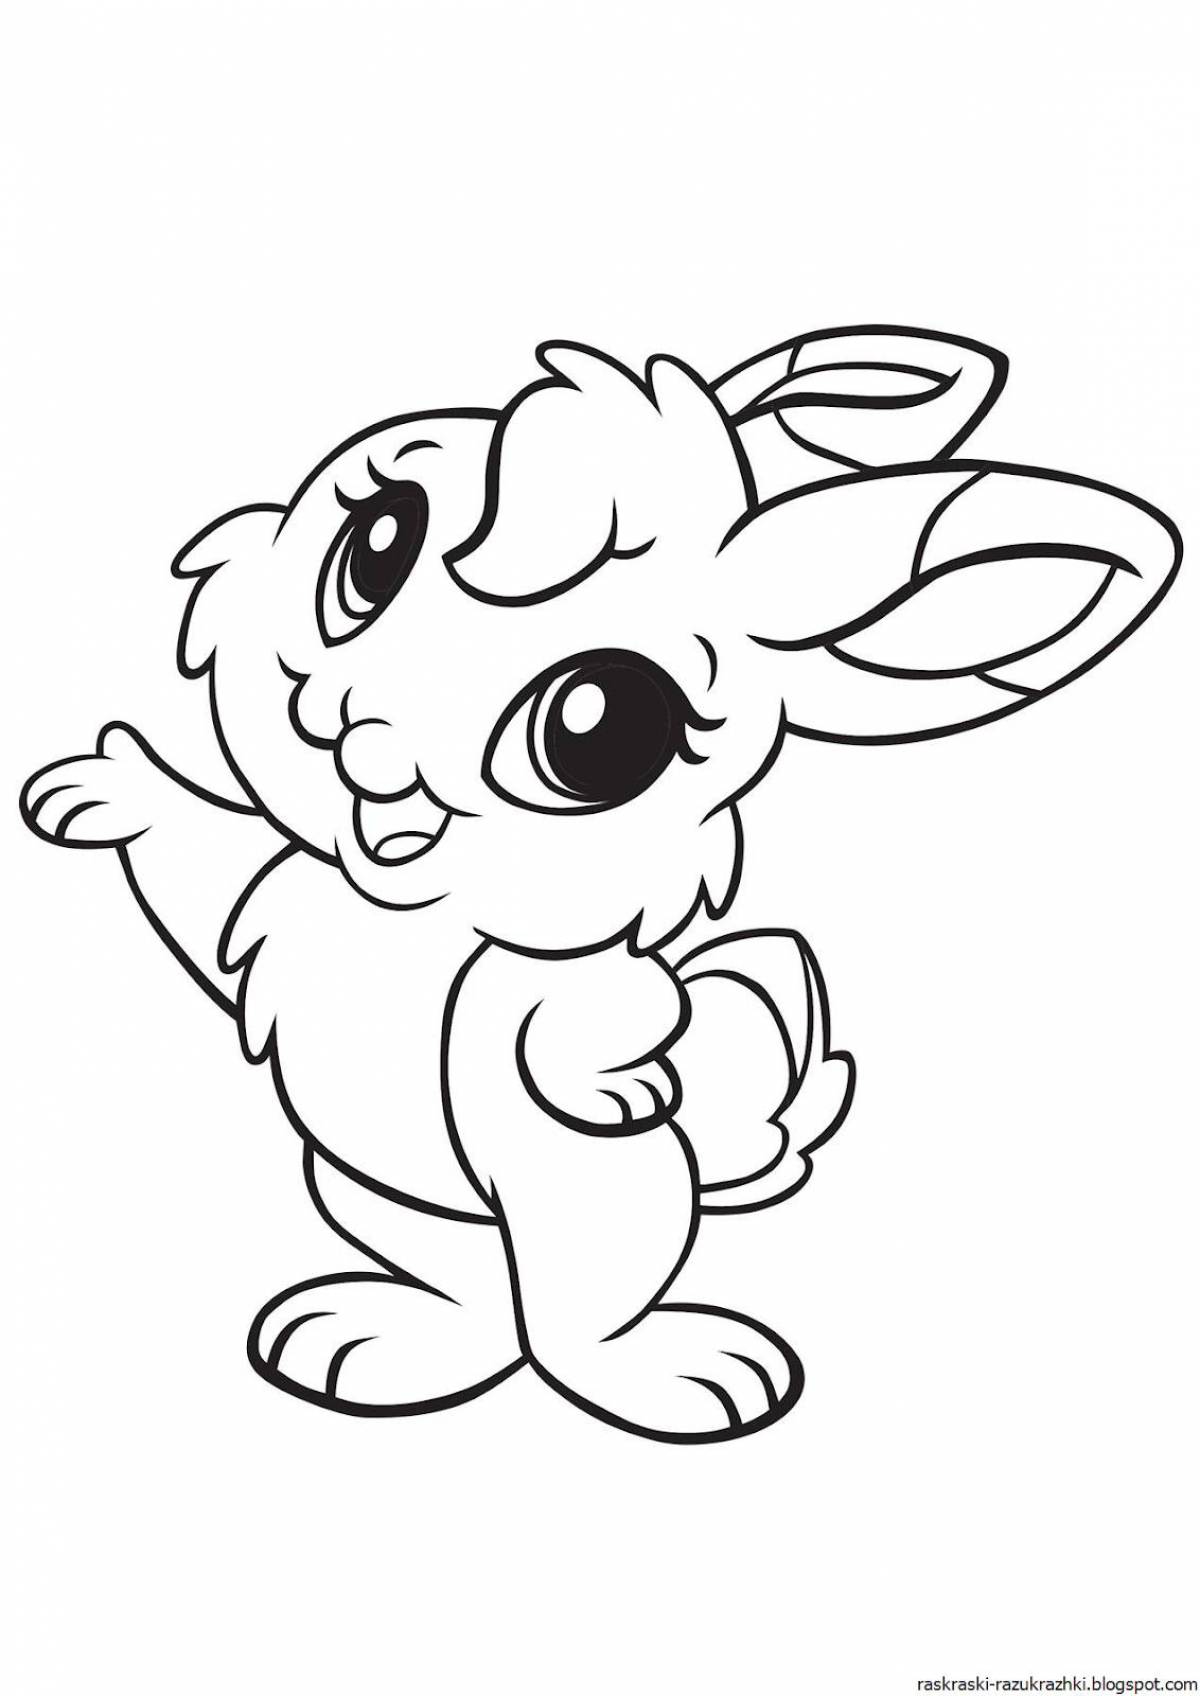 Остроумная раскраска кролик для детей